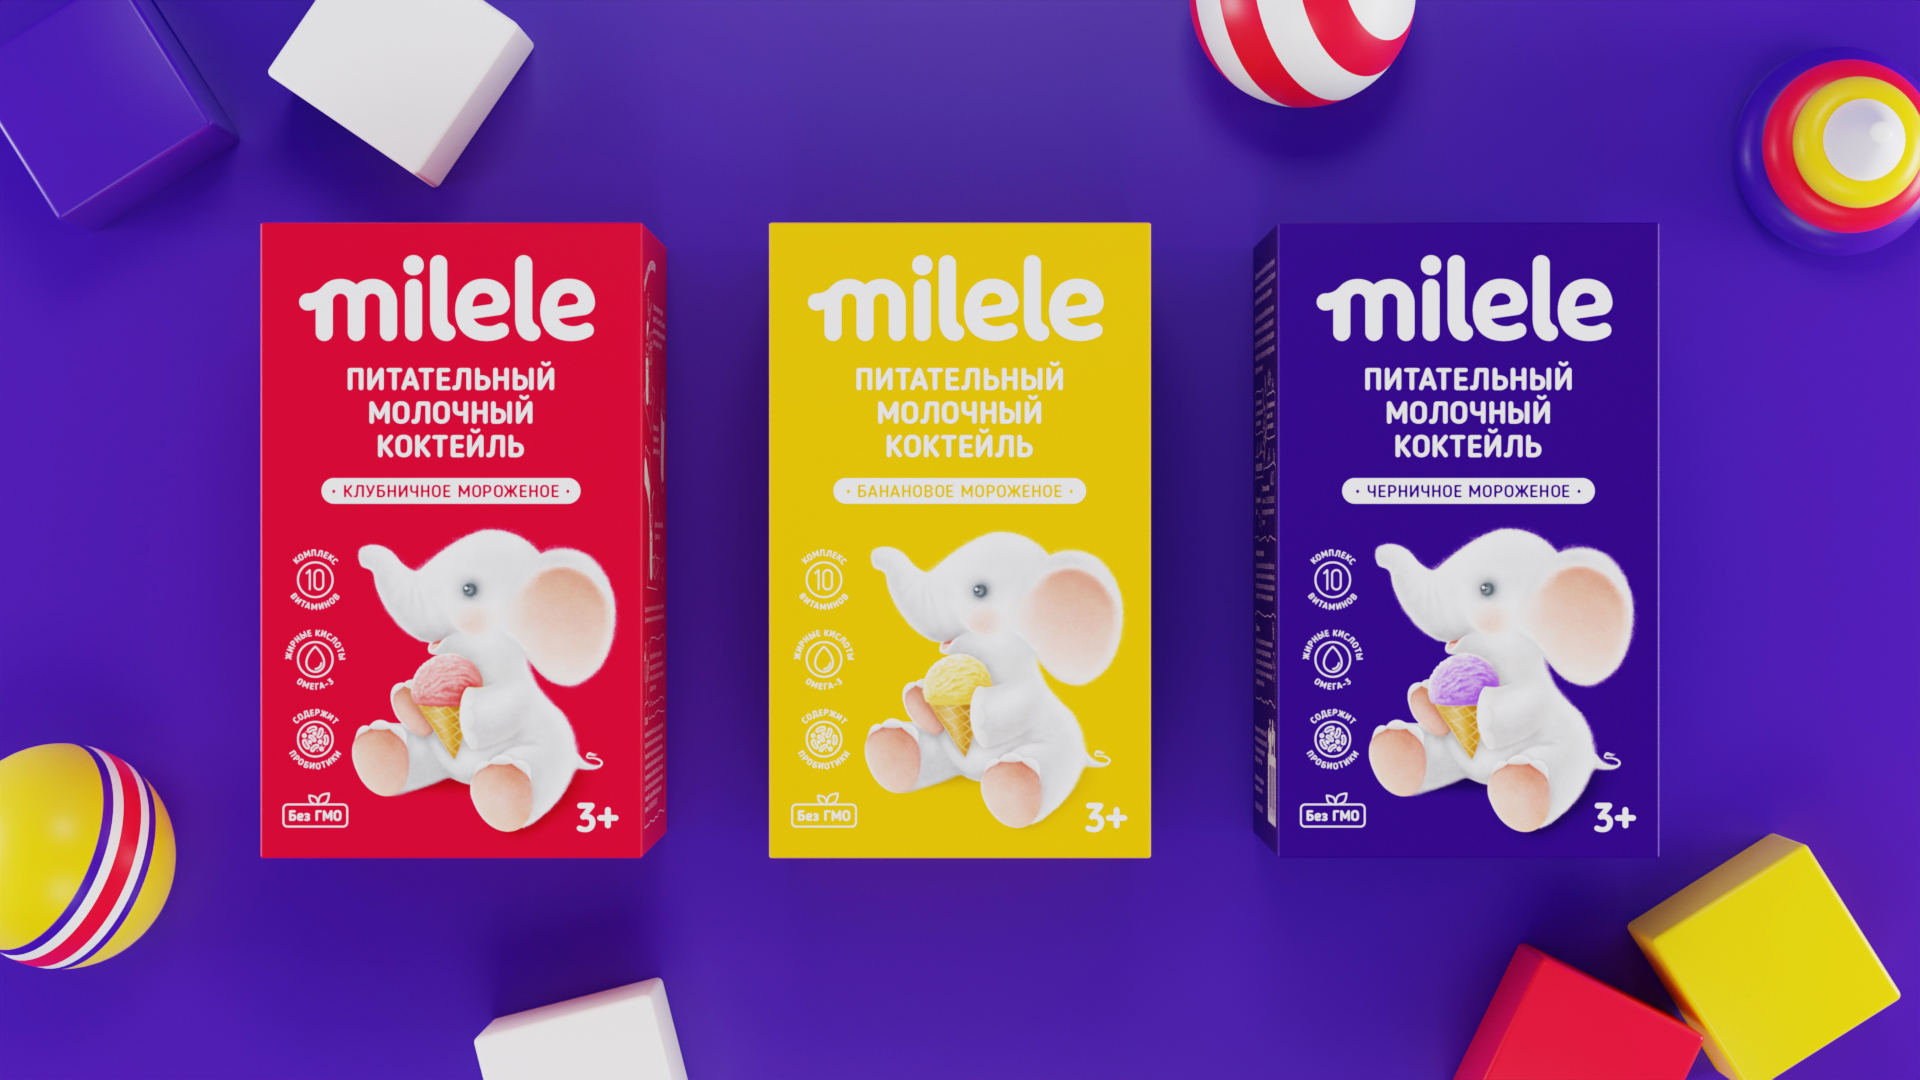 “Milele” Nutritious Milkshake For Children Branding and Packaging By Yeti Design Studio